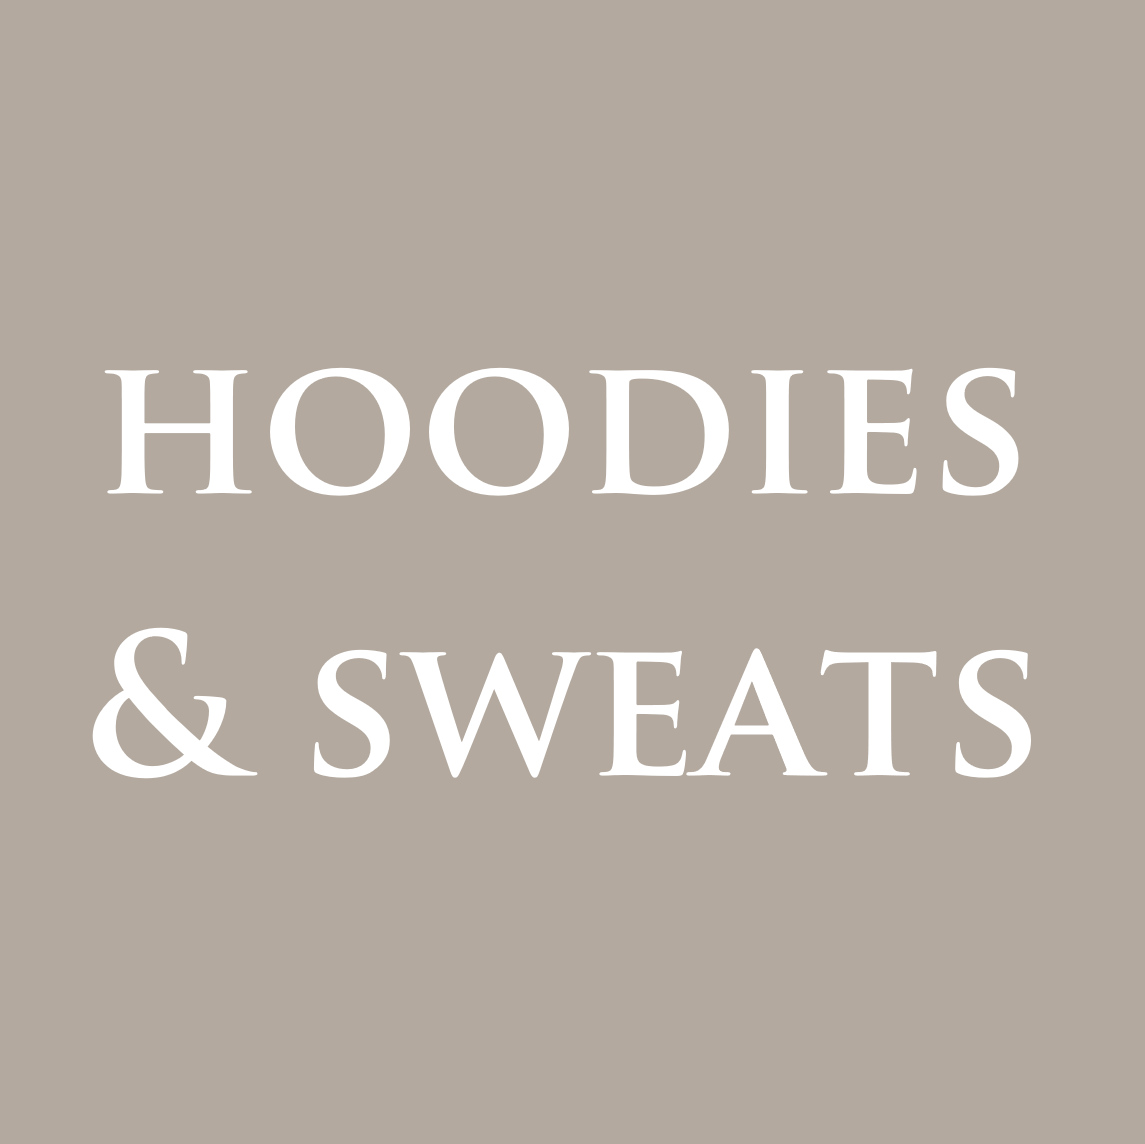 Hoodies and Sweats